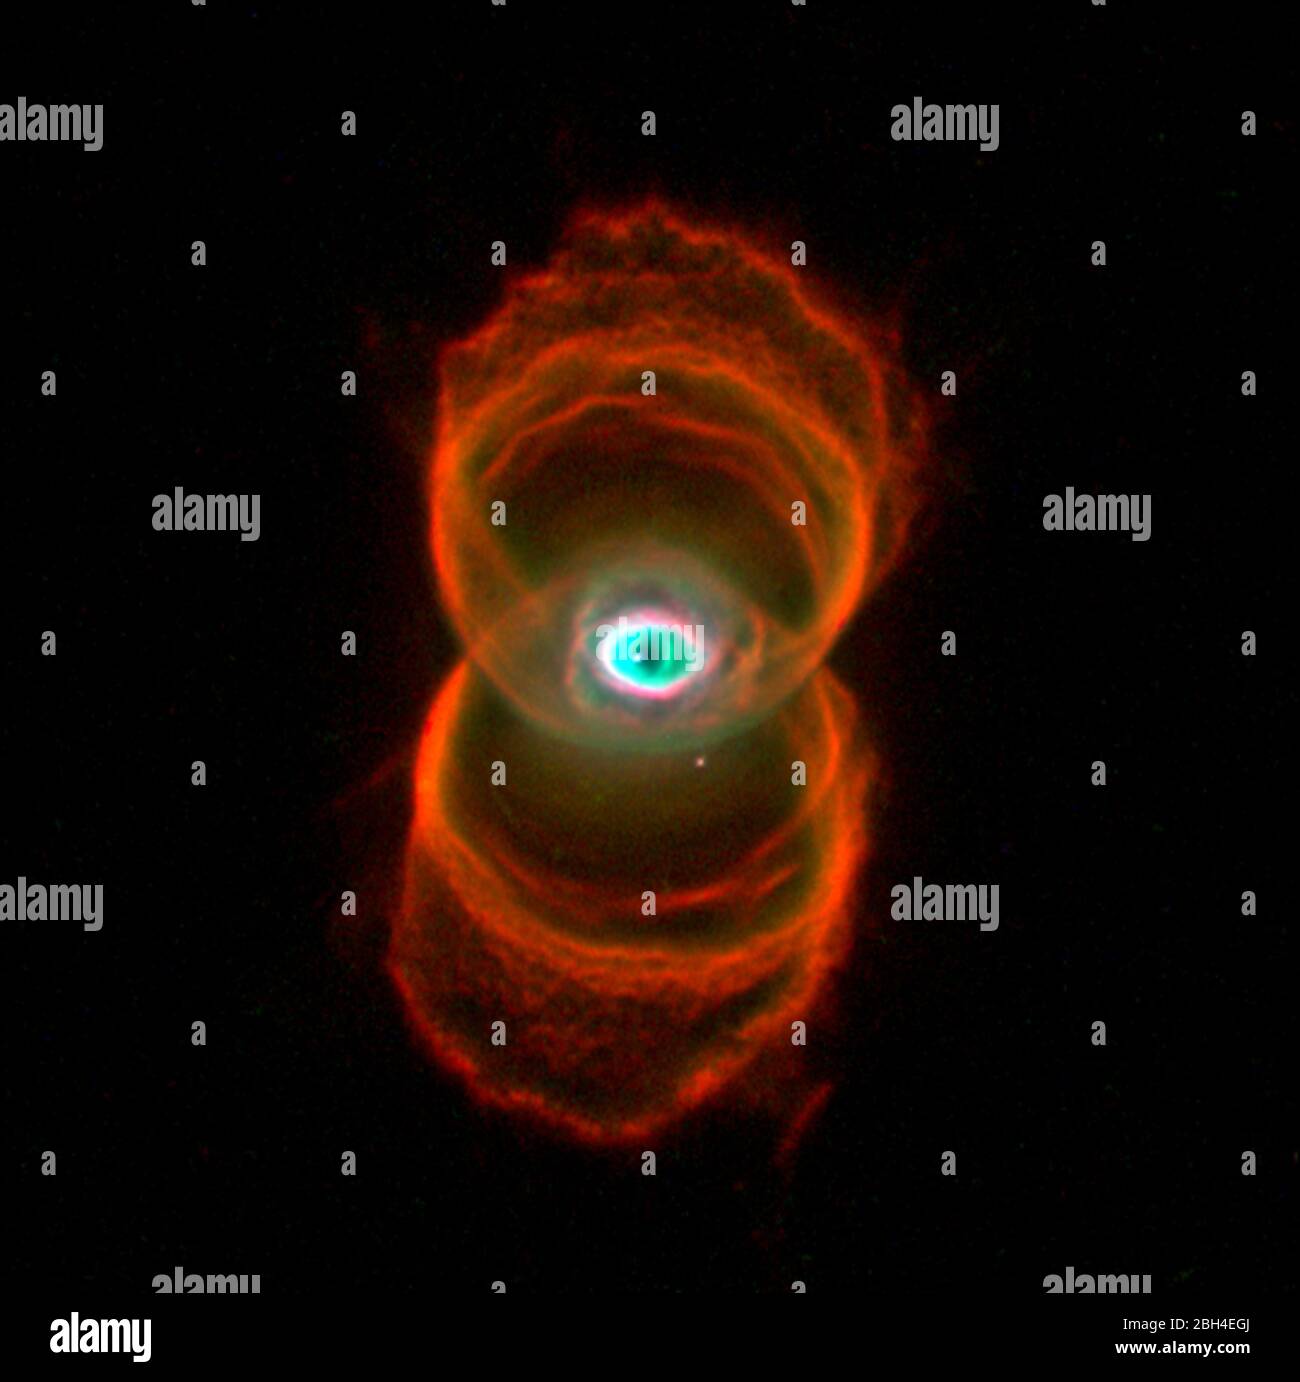 Dies ist ein Bild von MyCn18, einem jungen planetarischen Nebel, der etwa 8,000 Lichtjahre entfernt liegt, aufgenommen mit der Wide Field and Planetary Camera 2 (WFPC2) an Bord des Hubble Space Telescope (HST). Dieses Hubble-Bild zeigt die wahre Form von MyCn18 als Sanduhr mit einem komplizierten Muster von Radierungen in seinen Wänden. Dieses Bild besteht aus drei separaten Bildern, die im Licht von ionisiertem Stickstoff (dargestellt durch Rot), Wasserstoff (grün) und doppelt ionisiertem Sauerstoff (blau) aufgenommen wurden. Stockfoto